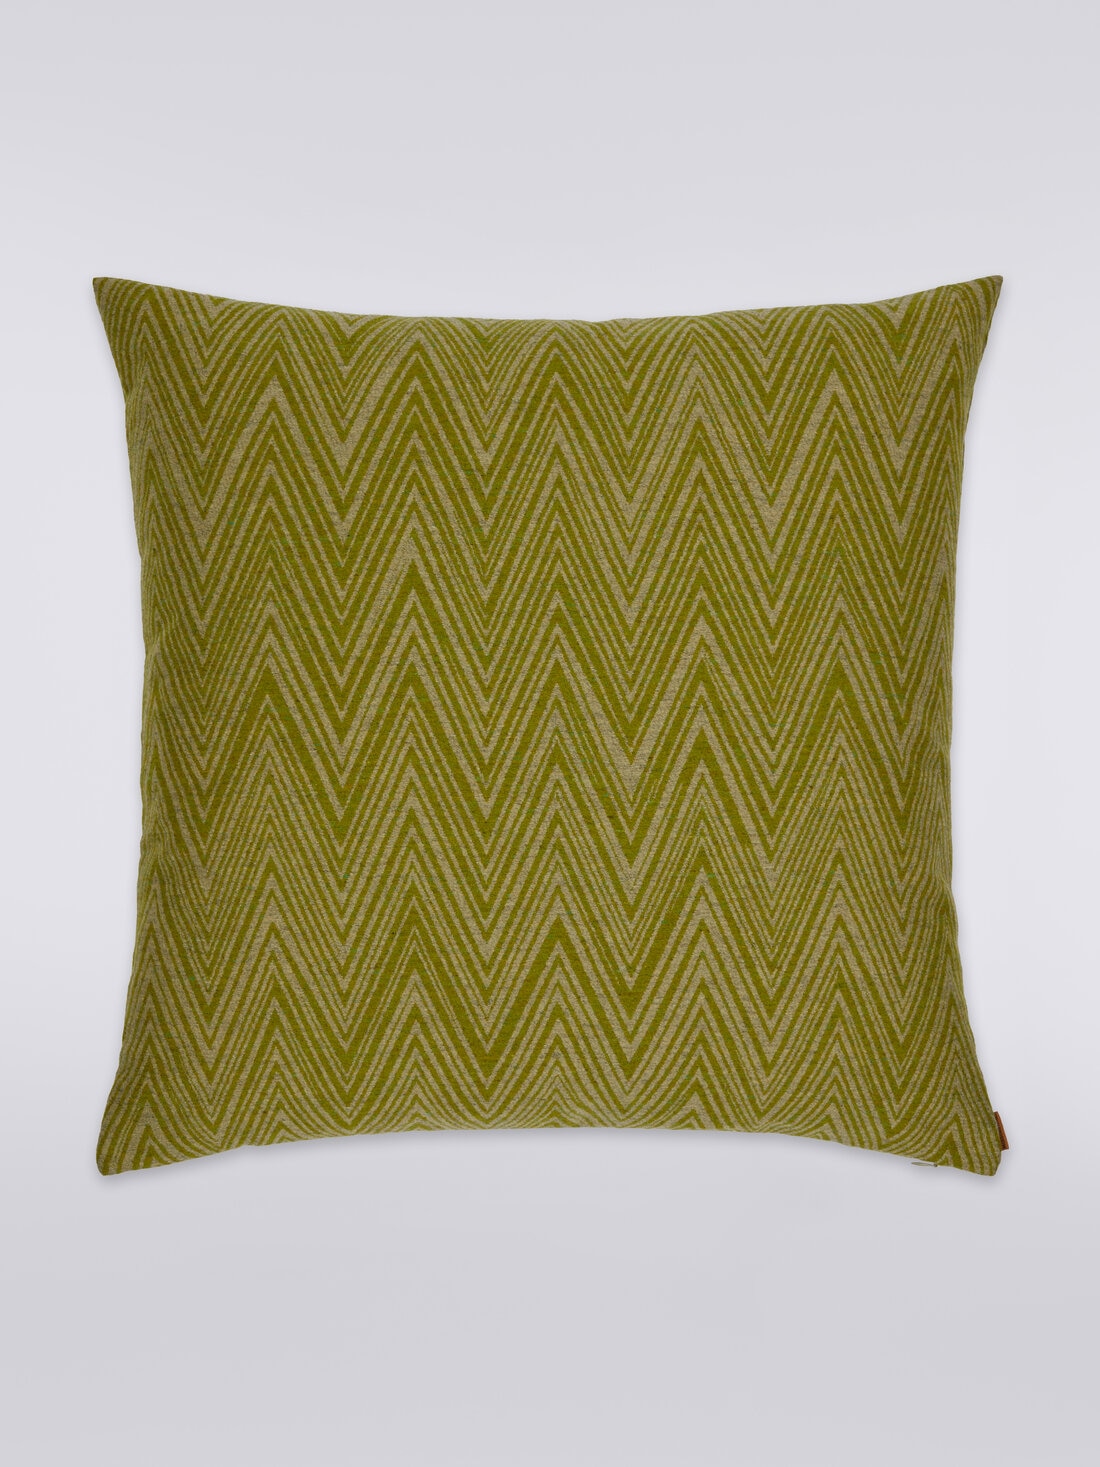 Bridgetown cushion 60x60 cm, Multicoloured  - 8051275581758 - 0